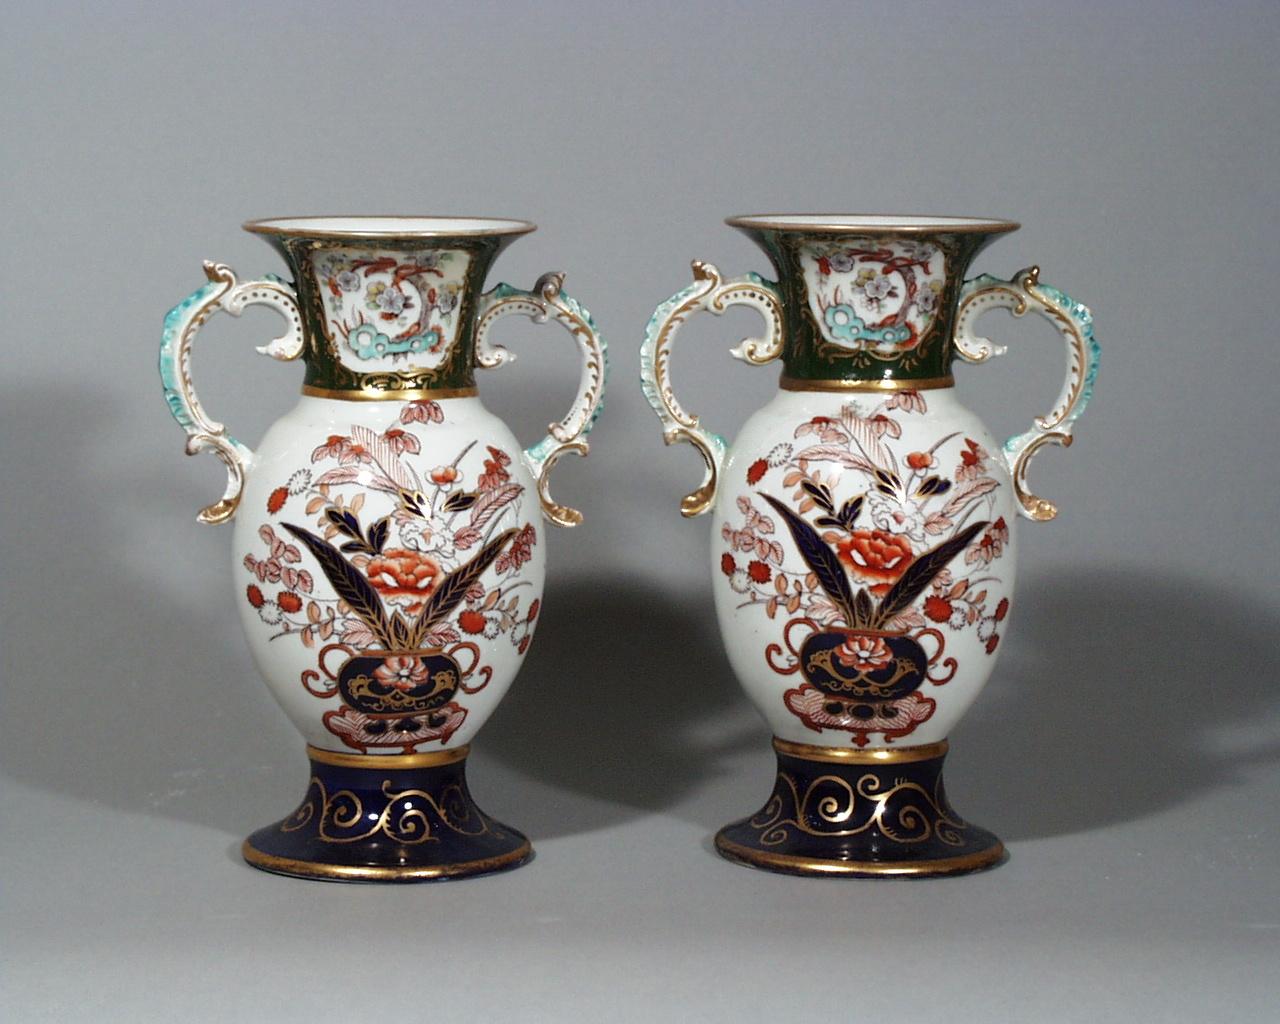 Mason's Eisenstein Japan Muster Paar Vasen,
um 1830-1840.
 
Die Vasen sind in einer Imari-Palette mit türkisfarbenen und vergoldeten Griffen verziert. Der runde, ausladende Fuß hat einen mazarineblauen Grund mit vergoldeten Highlights. Der Hals